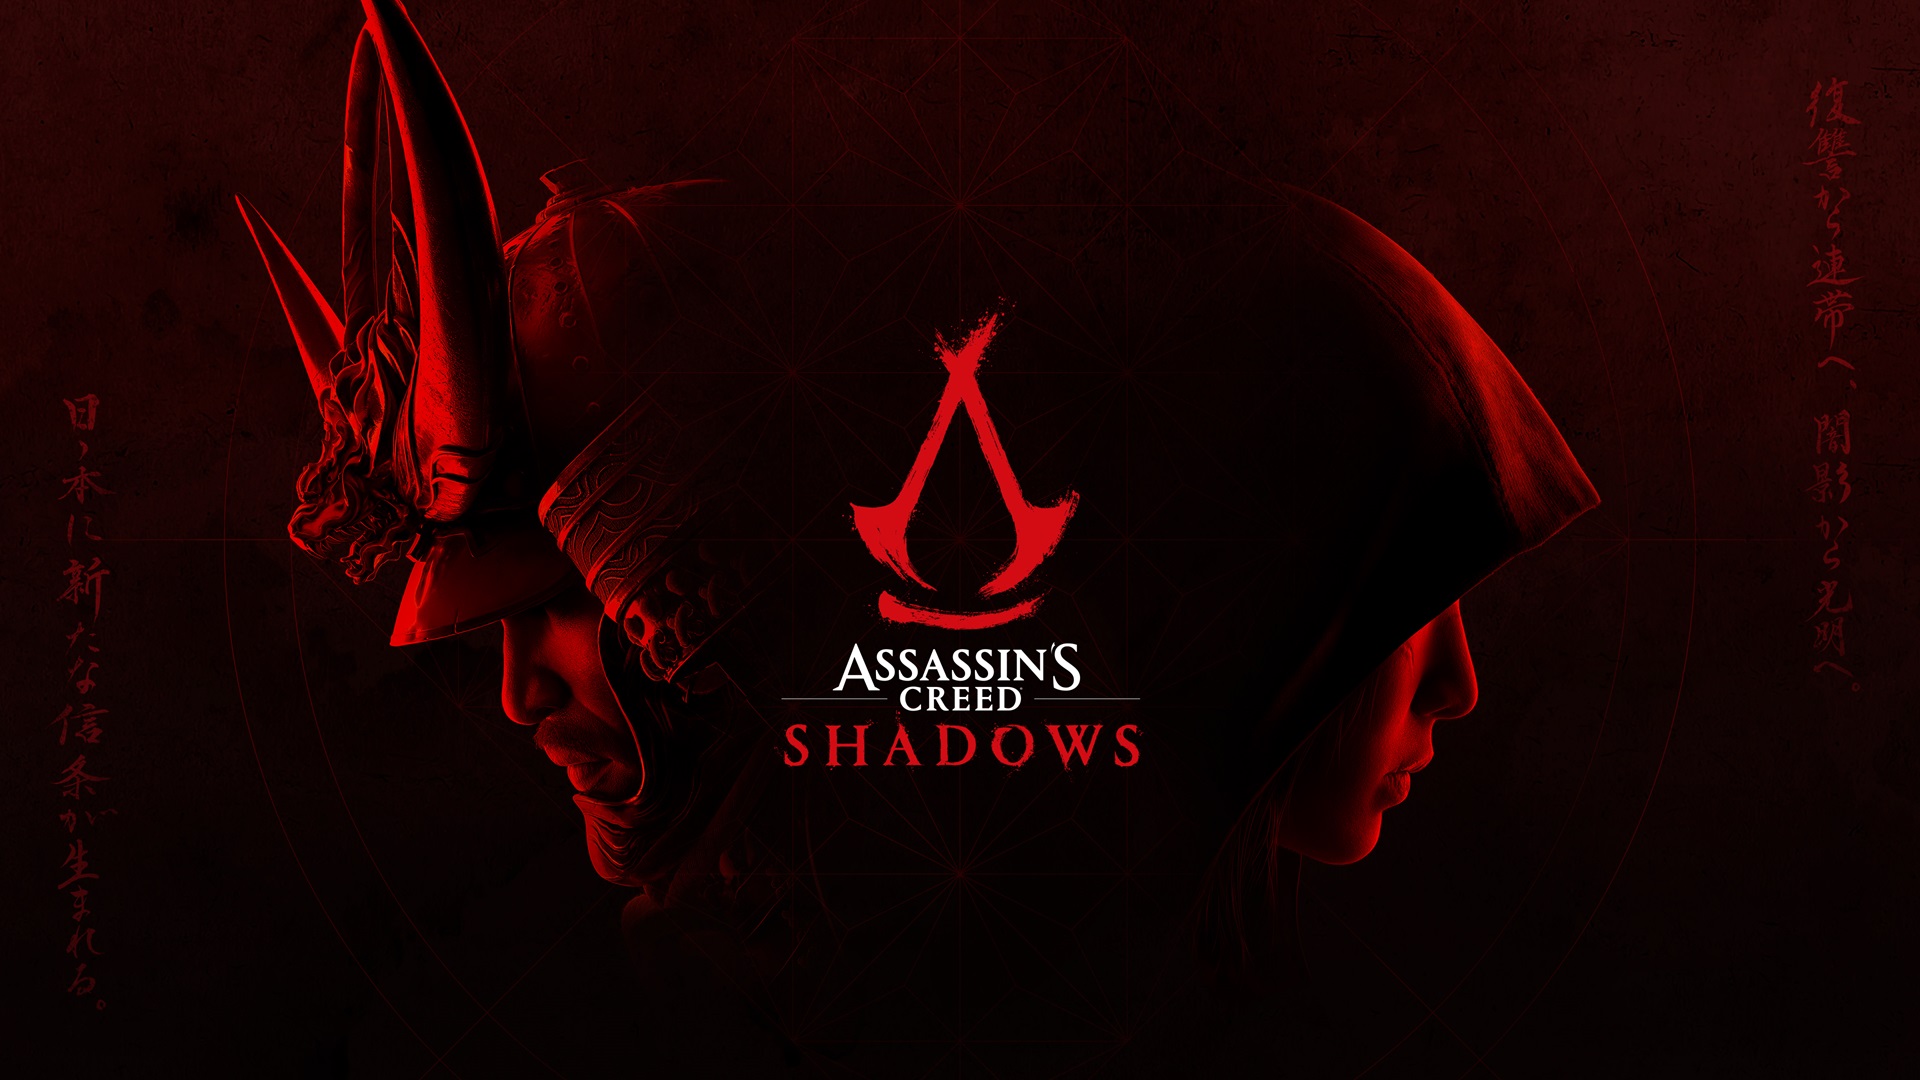 موشکافی تریلر Assassin's Creed Shadows | از راز و رمز شینتو تا حقیقت سامورایی سیاه پوست